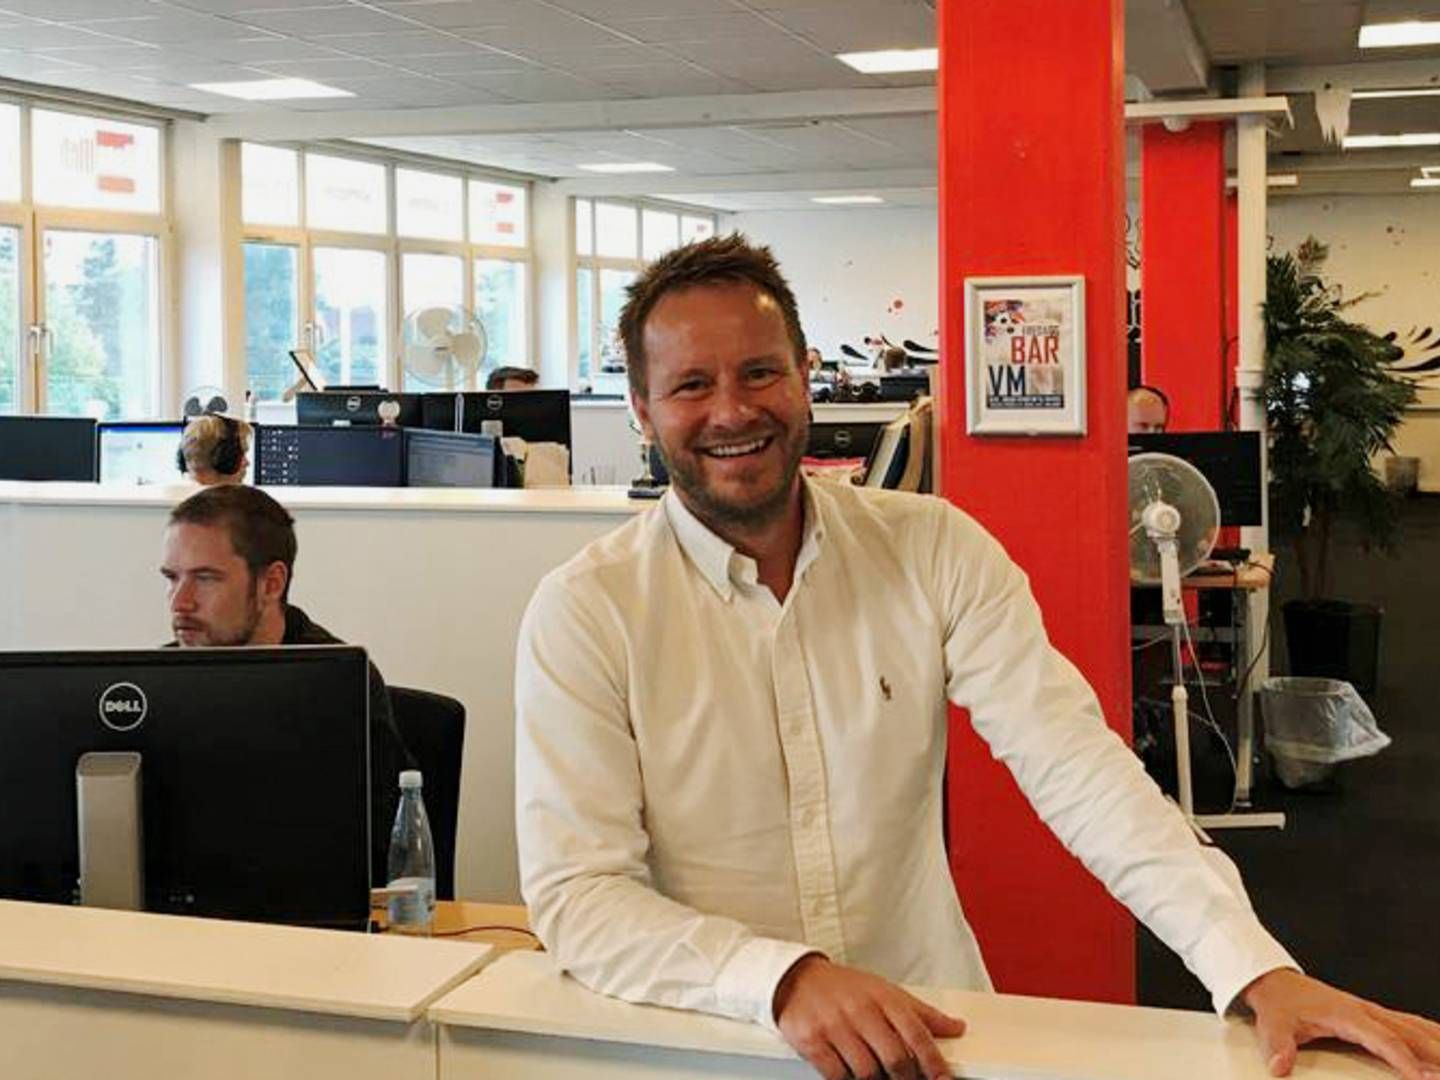 Danawebs adm. direktør Kenneth Stampe bliver chef for det nye selskab. | Foto: Danaweb/PR